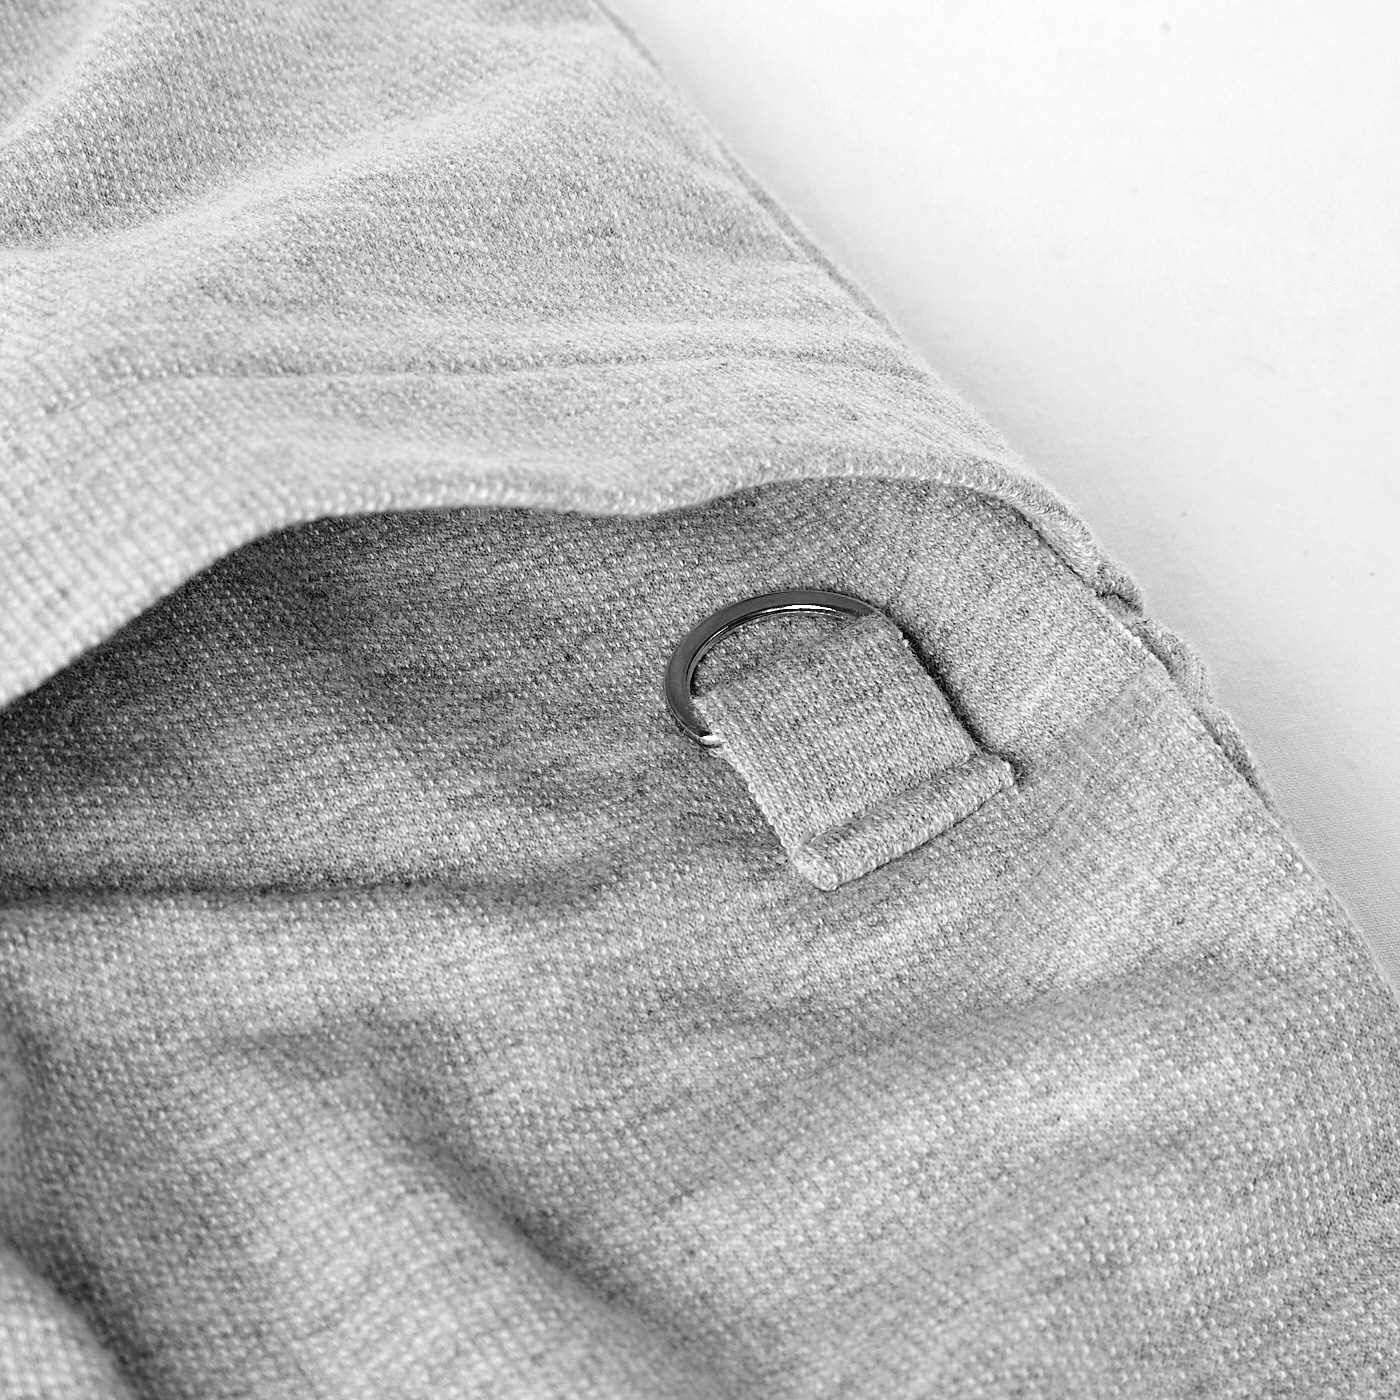 Real Stock|UP.de　着られるバッグ Tシャツ感覚なのにきれい見えする ポケットいっぱい てぶらなカットソースキッパーシャツ〈チャコールグレー〉|前ポケットにはDカン付き。お届けするカラーとは異なります。